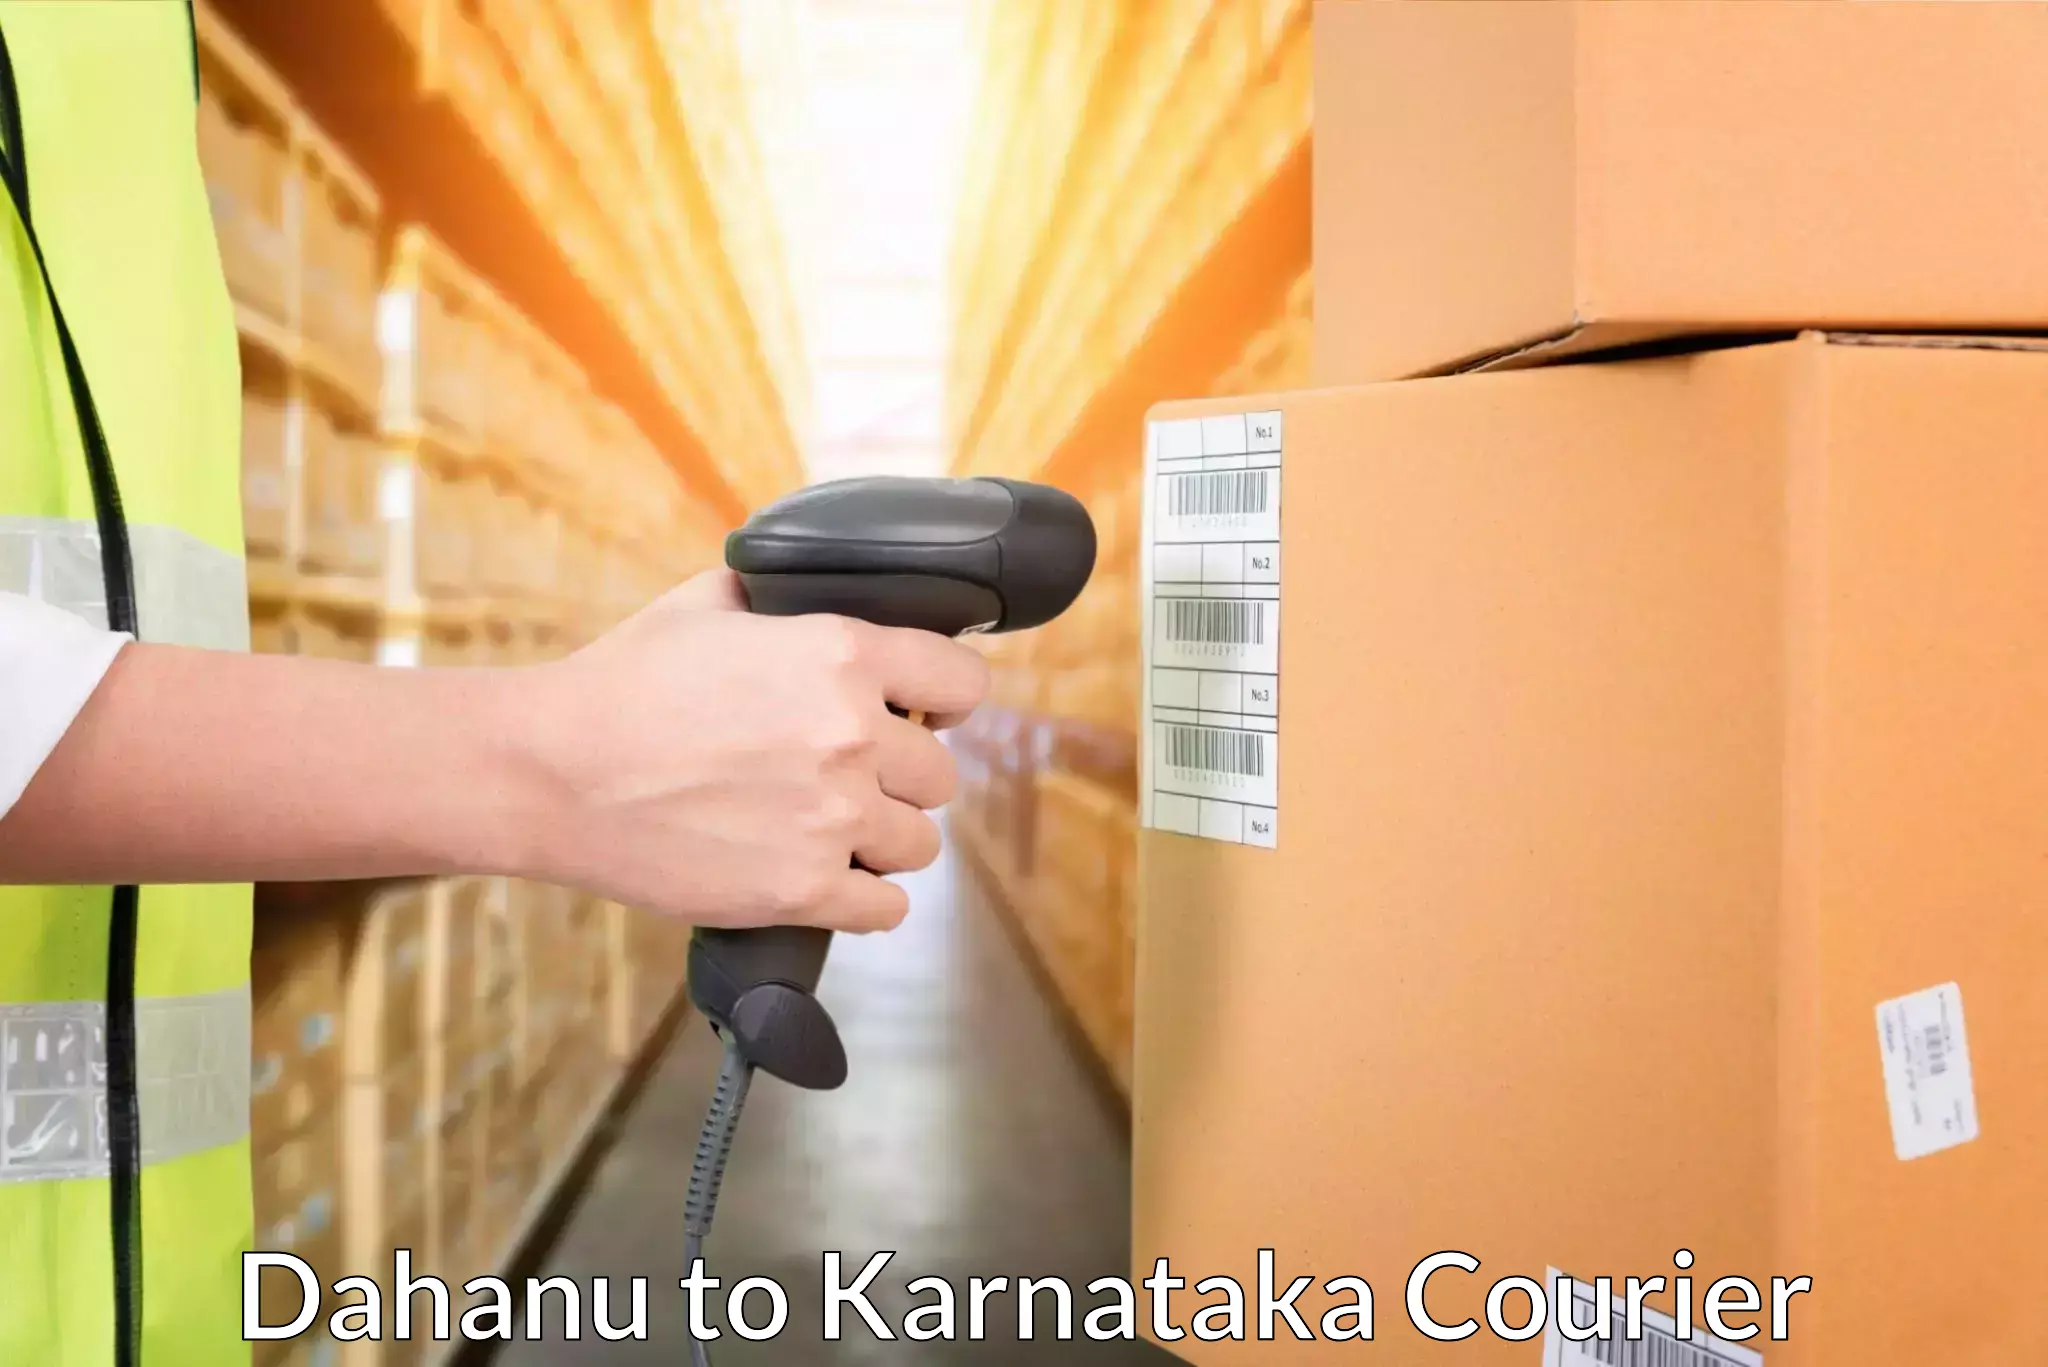 Punctual parcel services Dahanu to Bangalore